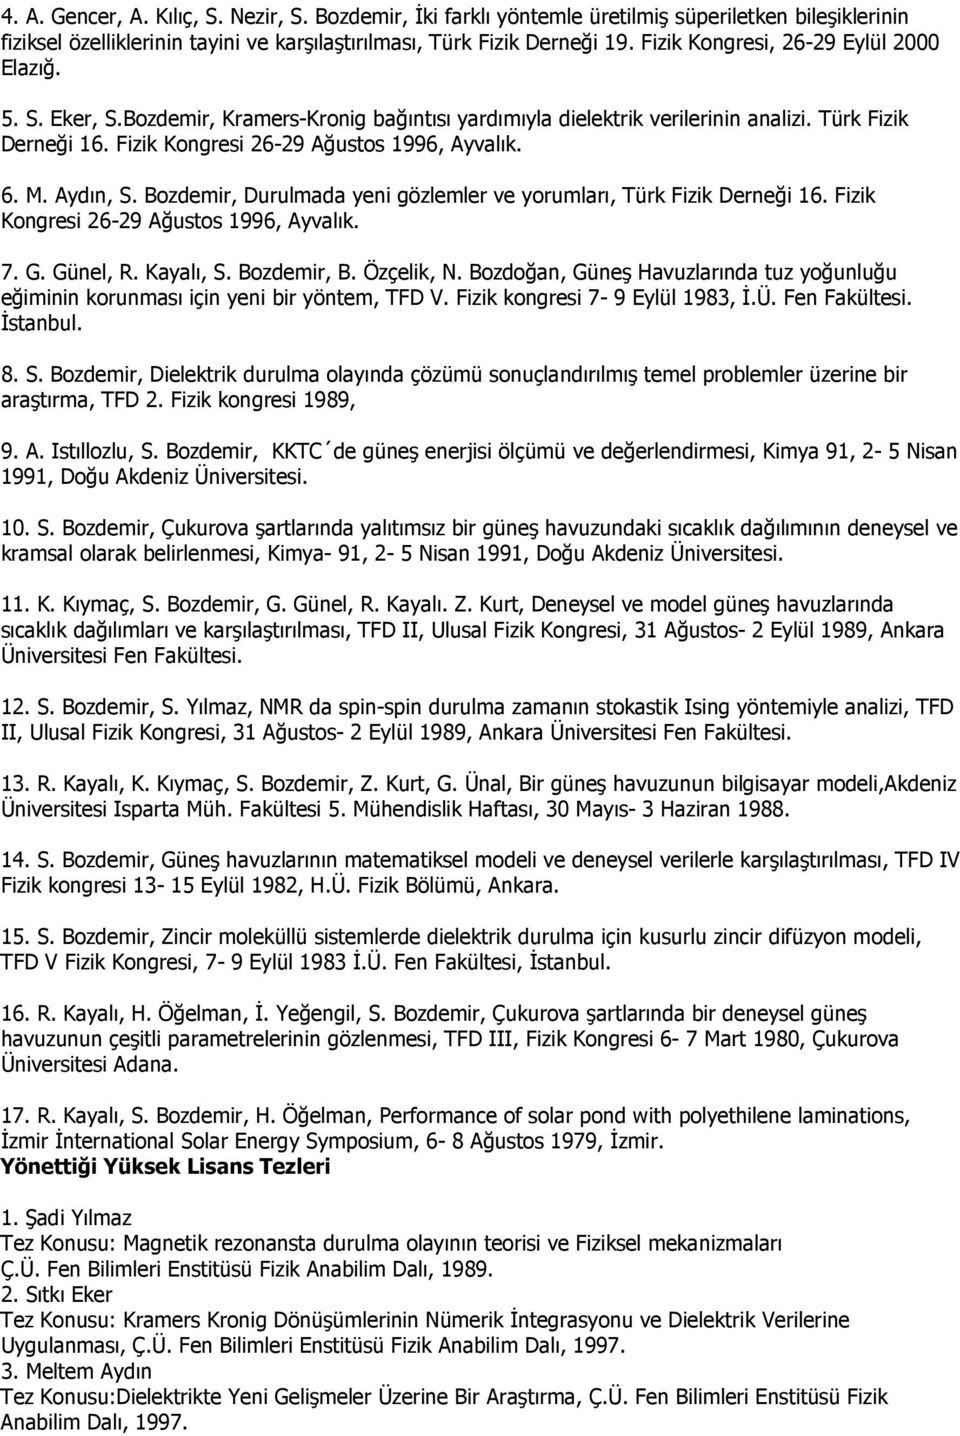 6. M. Aydın, S. Bozdemir, Durulmada yeni gözlemler ve yorumları, Türk Fizik Derneği 16. Fizik Kongresi 26-29 Ağustos 1996, Ayvalık. 7. G. Günel, R. Kayalı, S. Bozdemir, B. Özçelik, N.